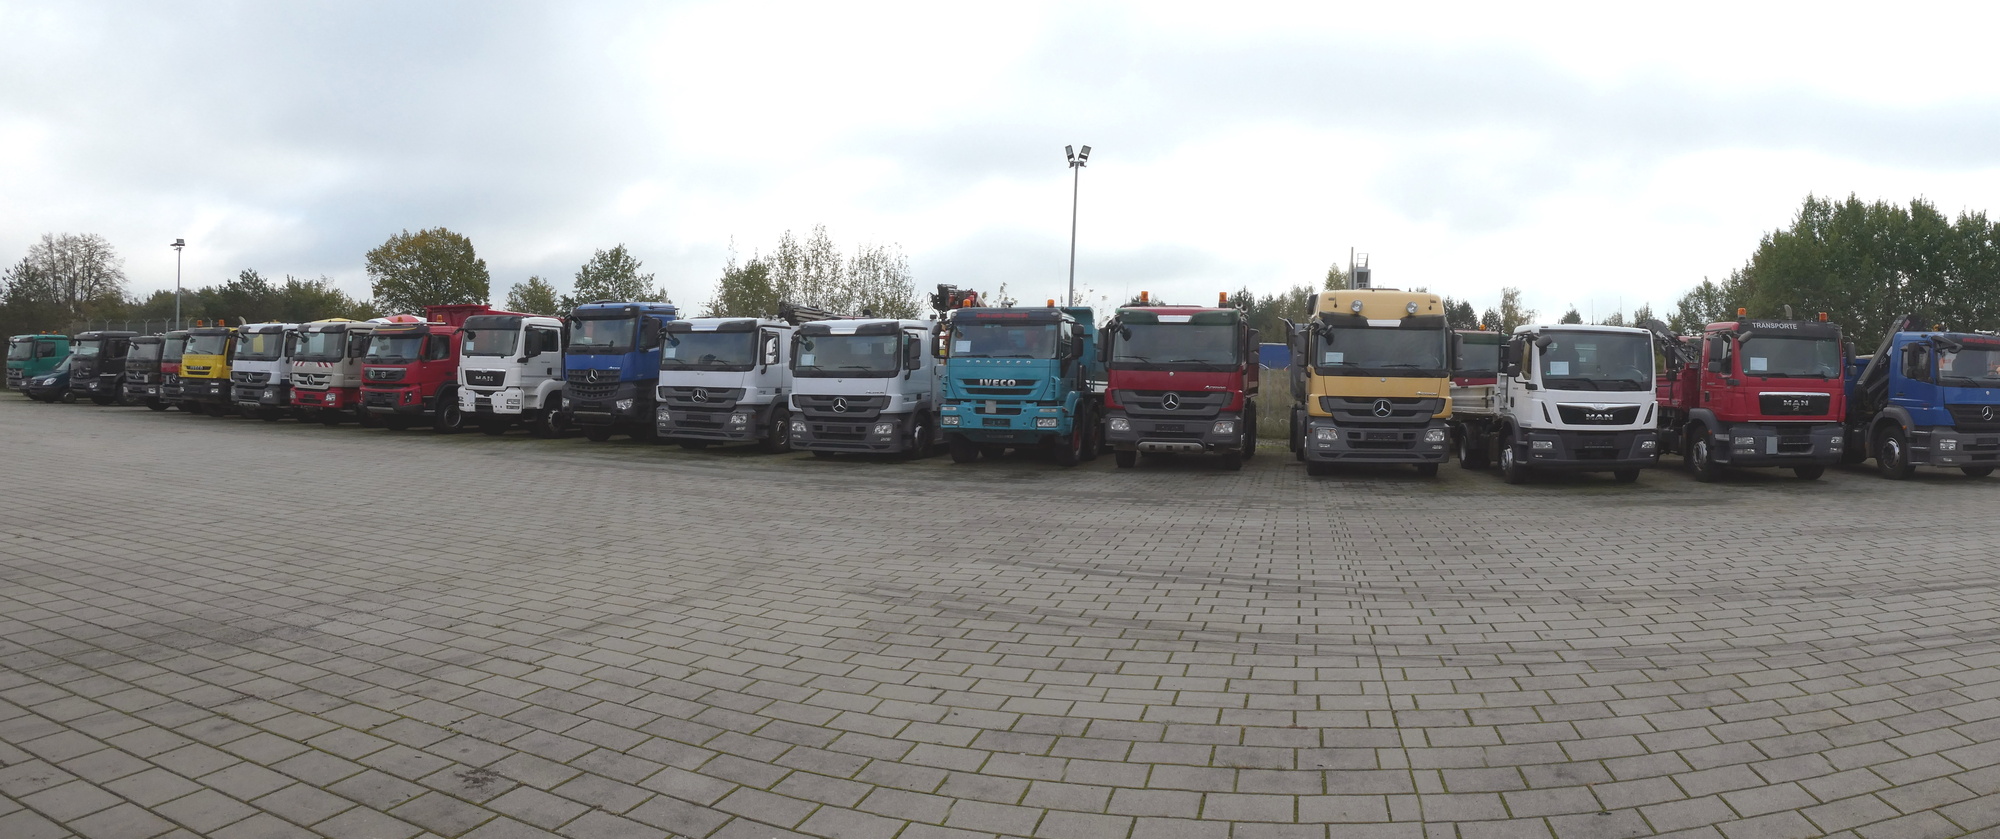 Henze Truck GmbH - Vans undefined: picture 1